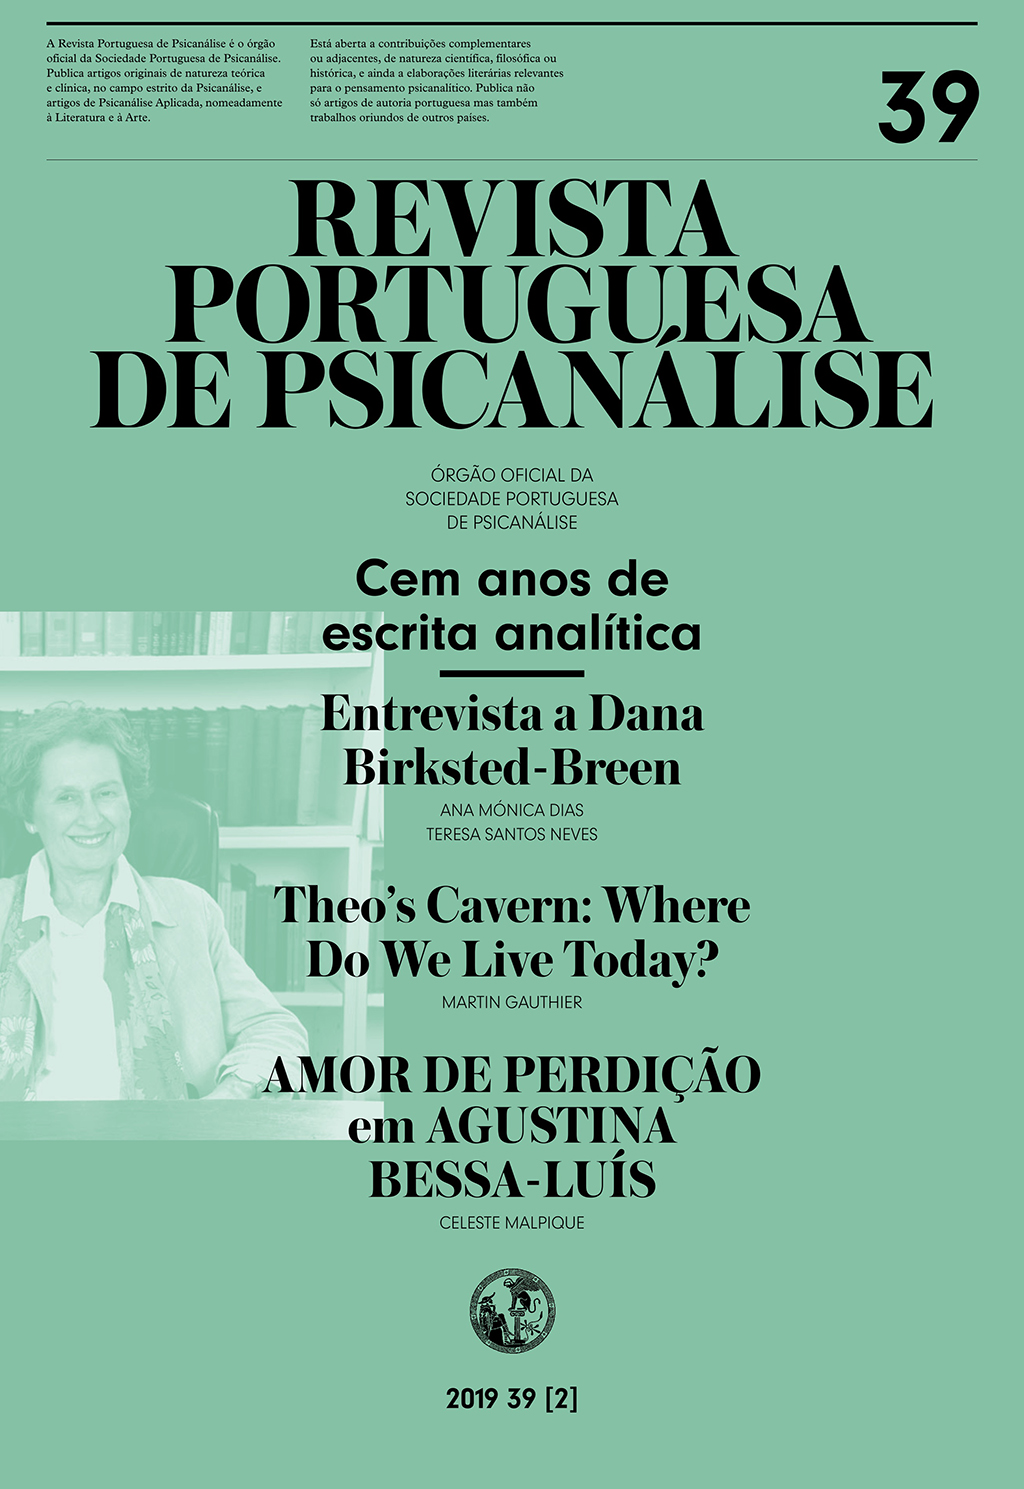 Vol. 39 N.º 2 (2019): Revista Portuguesa de Psicanálise